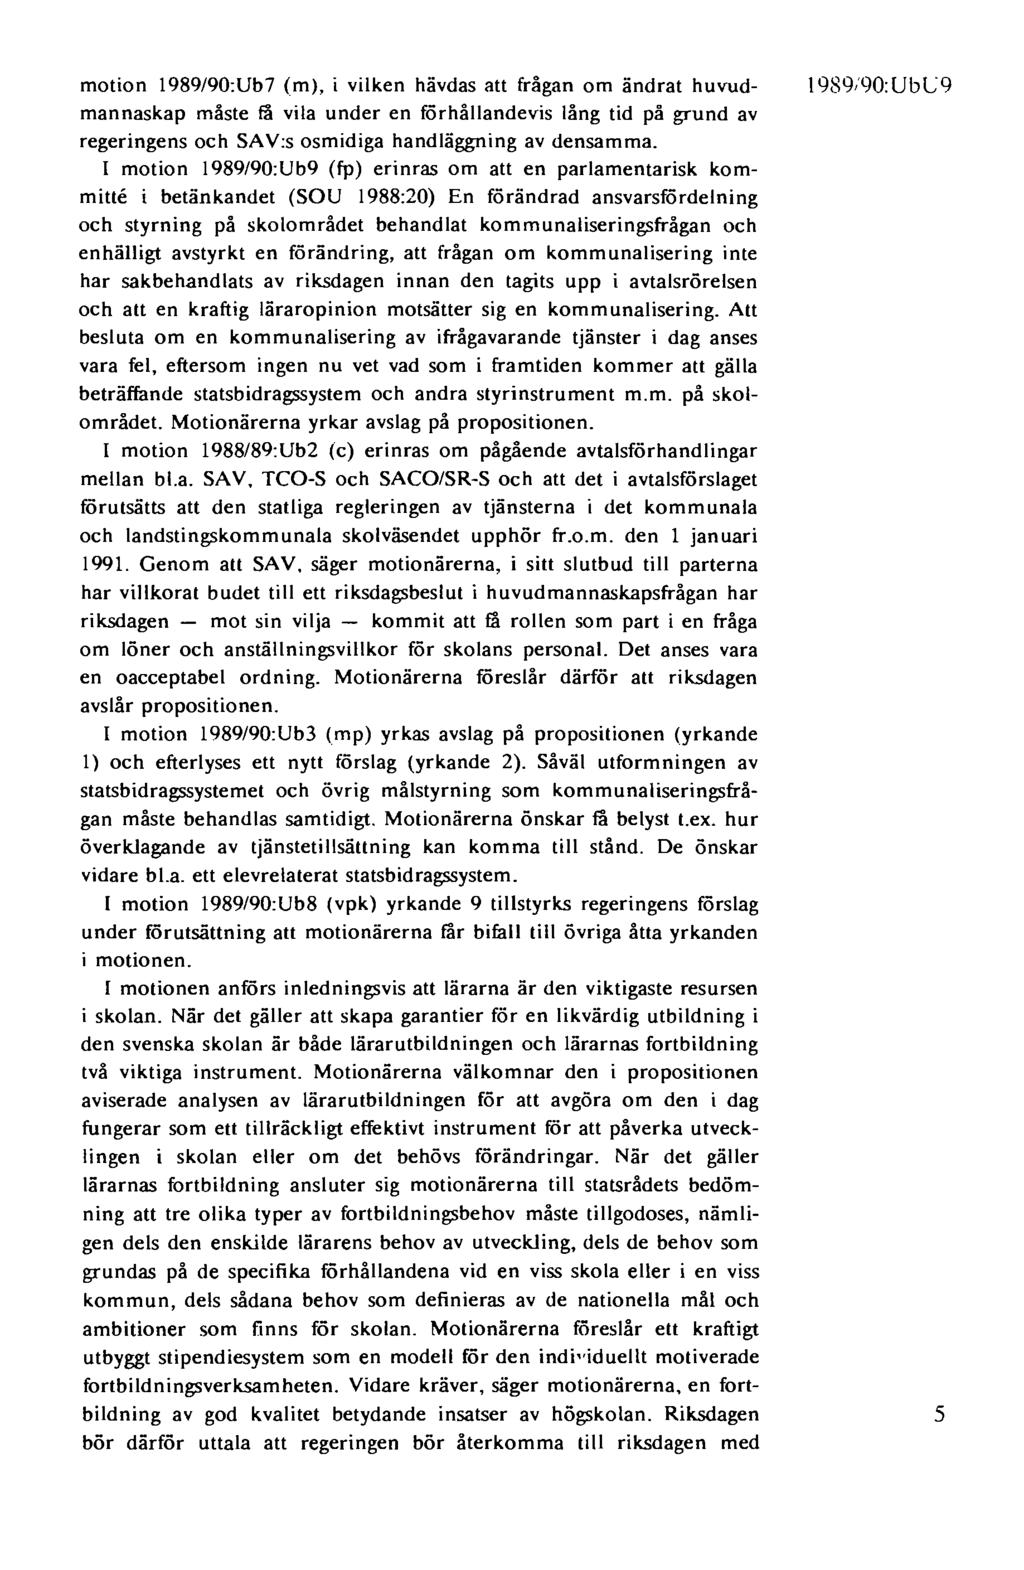 motion 1989/90:Ub7 (m), i vilken hävdas att frågan om ändrat huvudmannaskap måste få vila under en förhållandevis lång tid på grund av regeringens och SAV:s osmidiga handläggning av densamma.